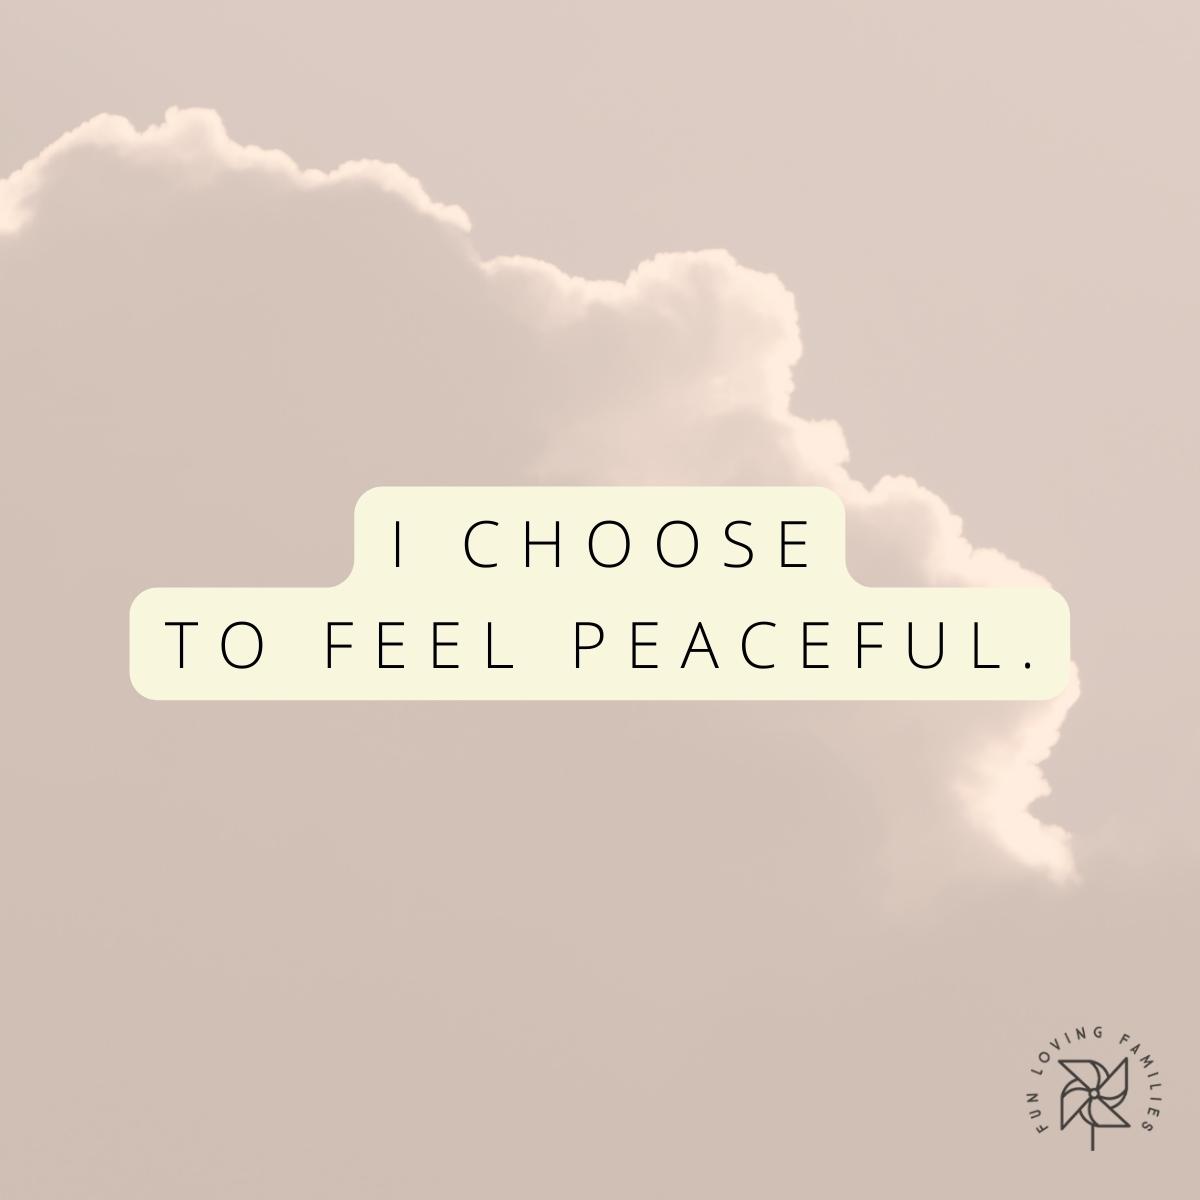 I choose to feel peaceful